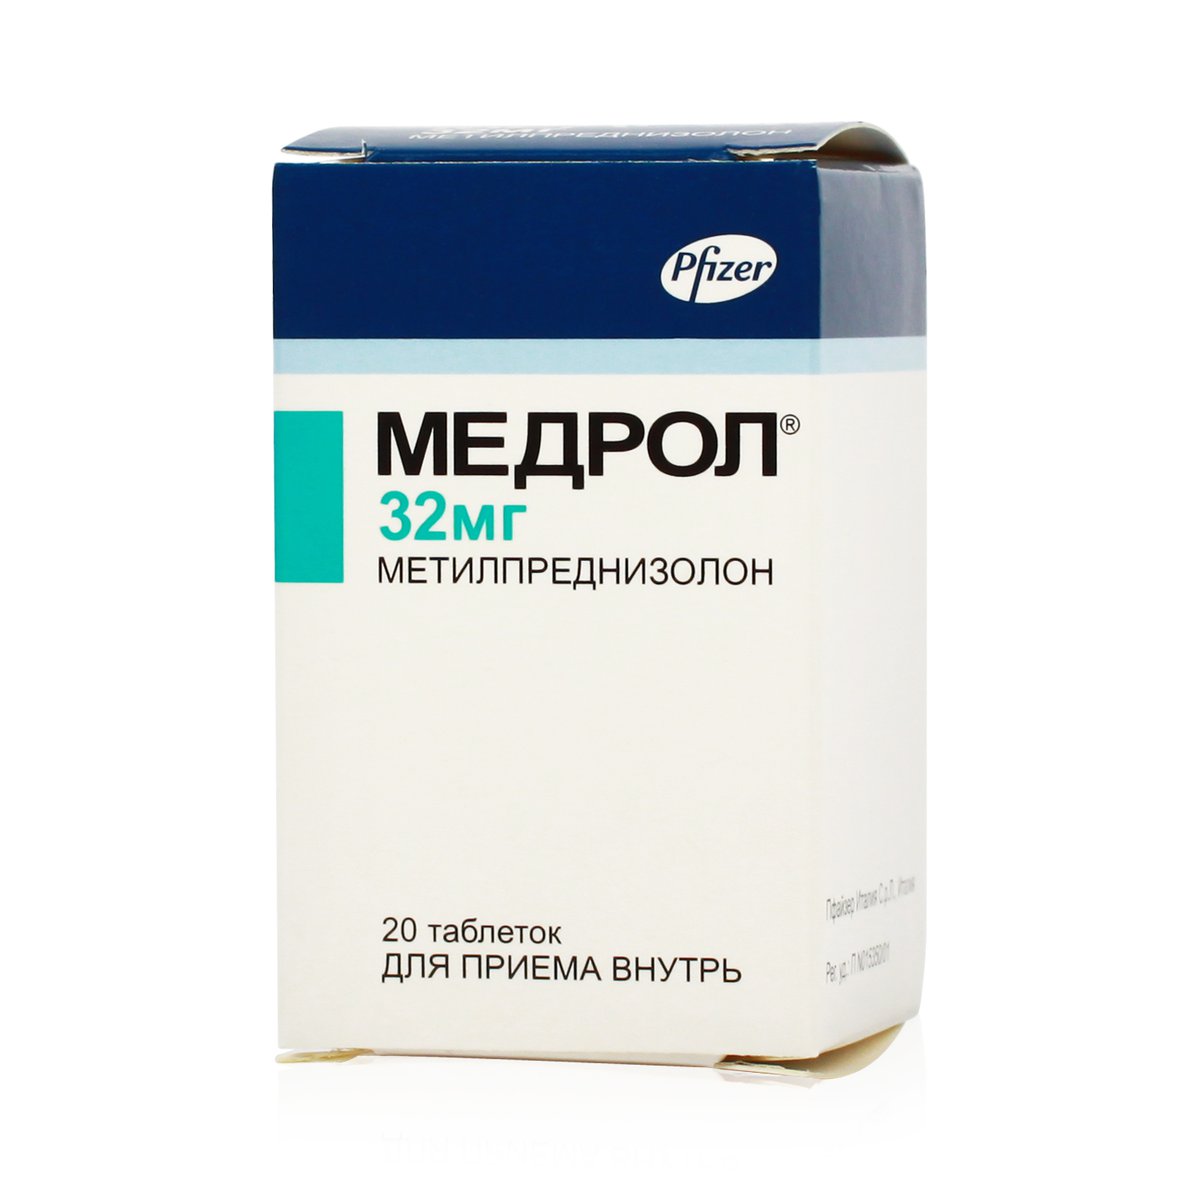 Медрол (таблетки, 20 шт, 32 мг) - цена,  онлайн  .